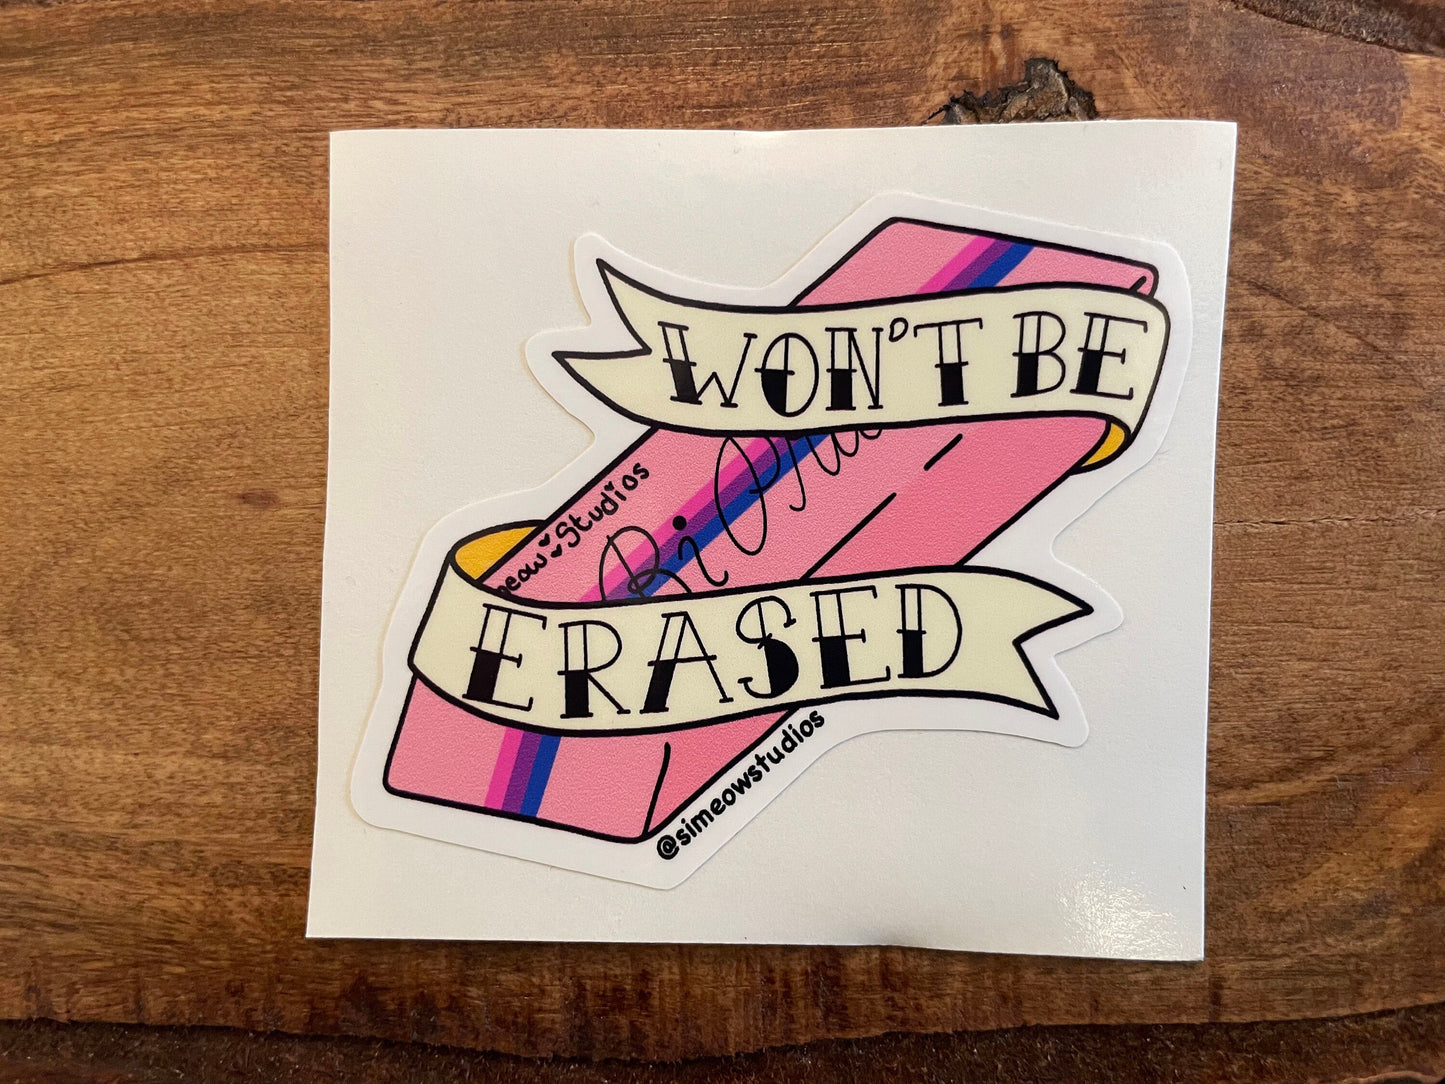 Bisexual Pride Sticker/ Bisexual Eraser Weatherproof Die-Cut Sticker/ Wont Be Erased Die-Cut Sticker/ Bisexual Pride Flag Sticker